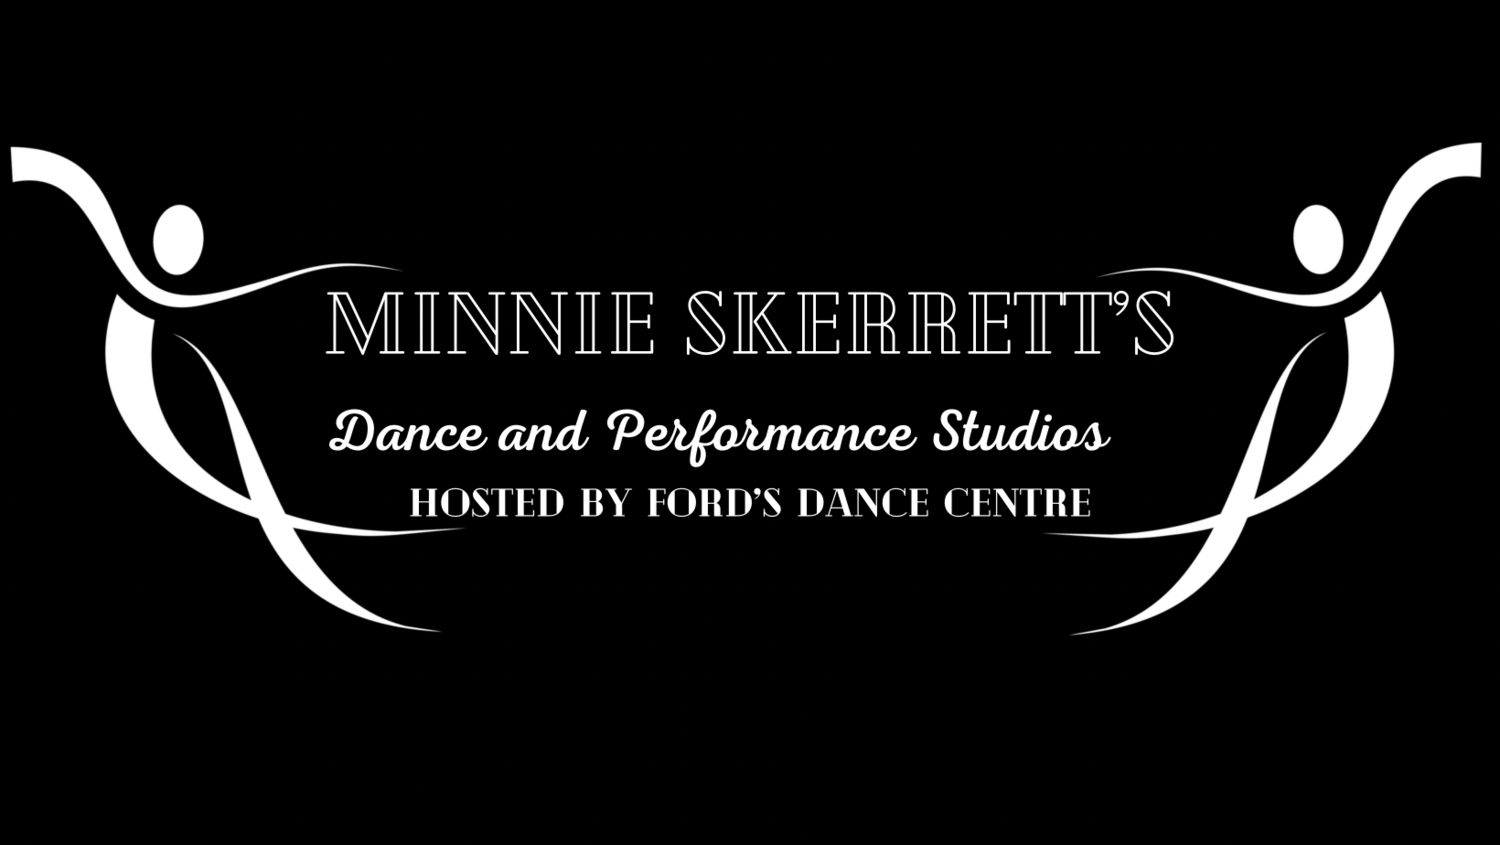 Minnie Skerrett’s Dance and Performance Studios